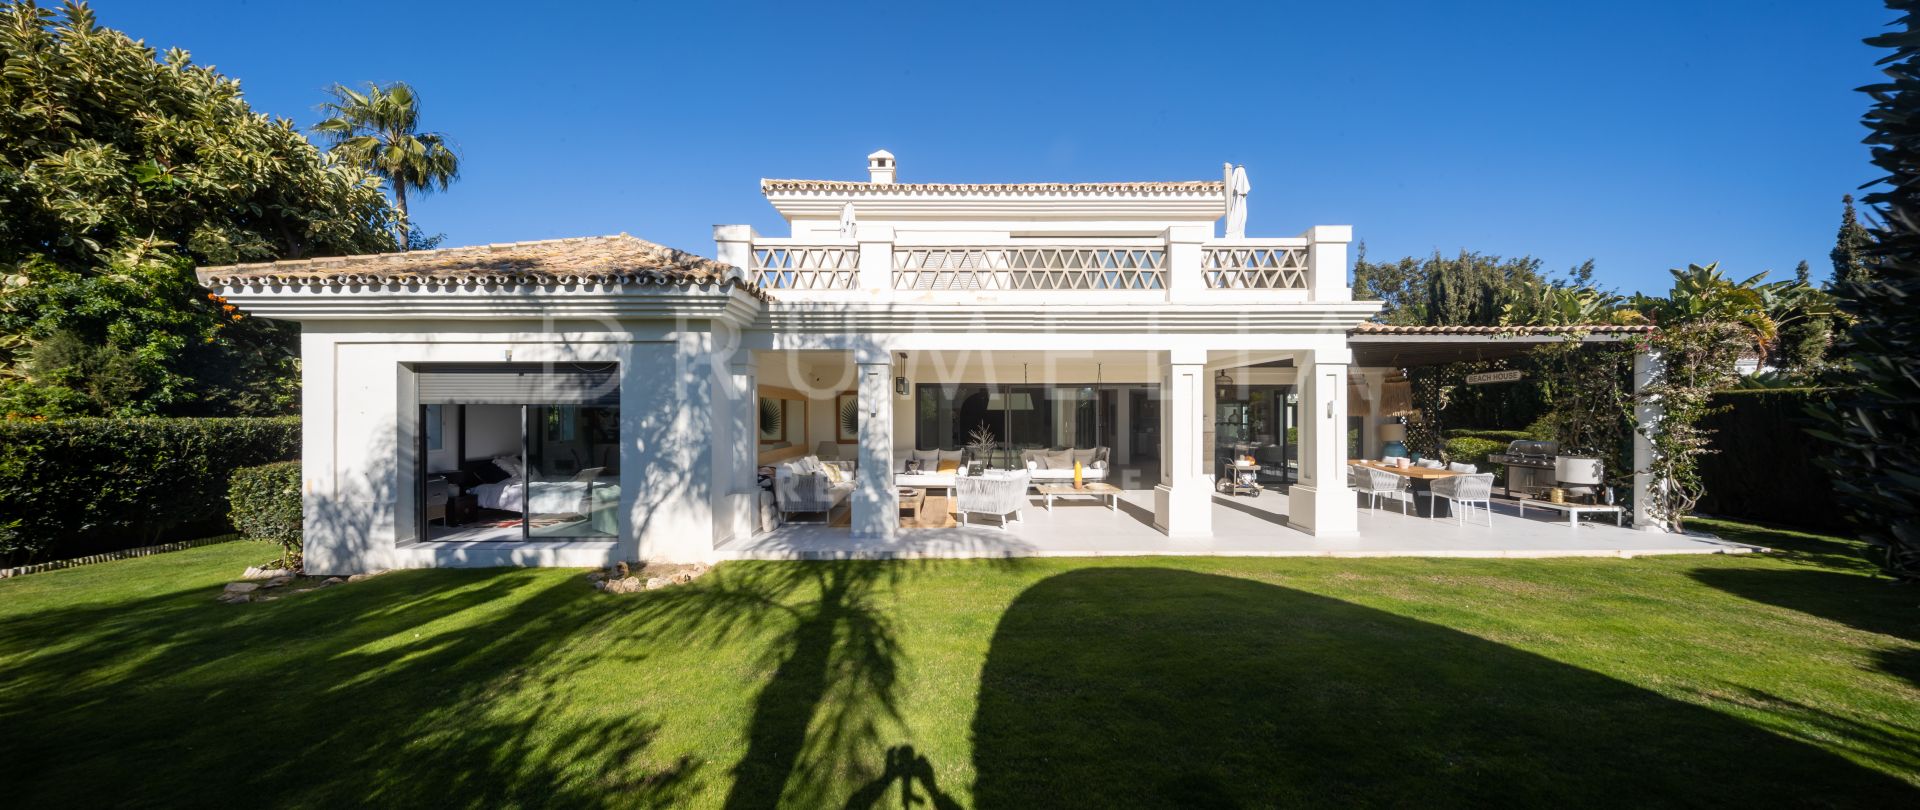 Indrukwekkende luxe villa met mediterrane flair en moderne kenmerken in Casasola, Estepona